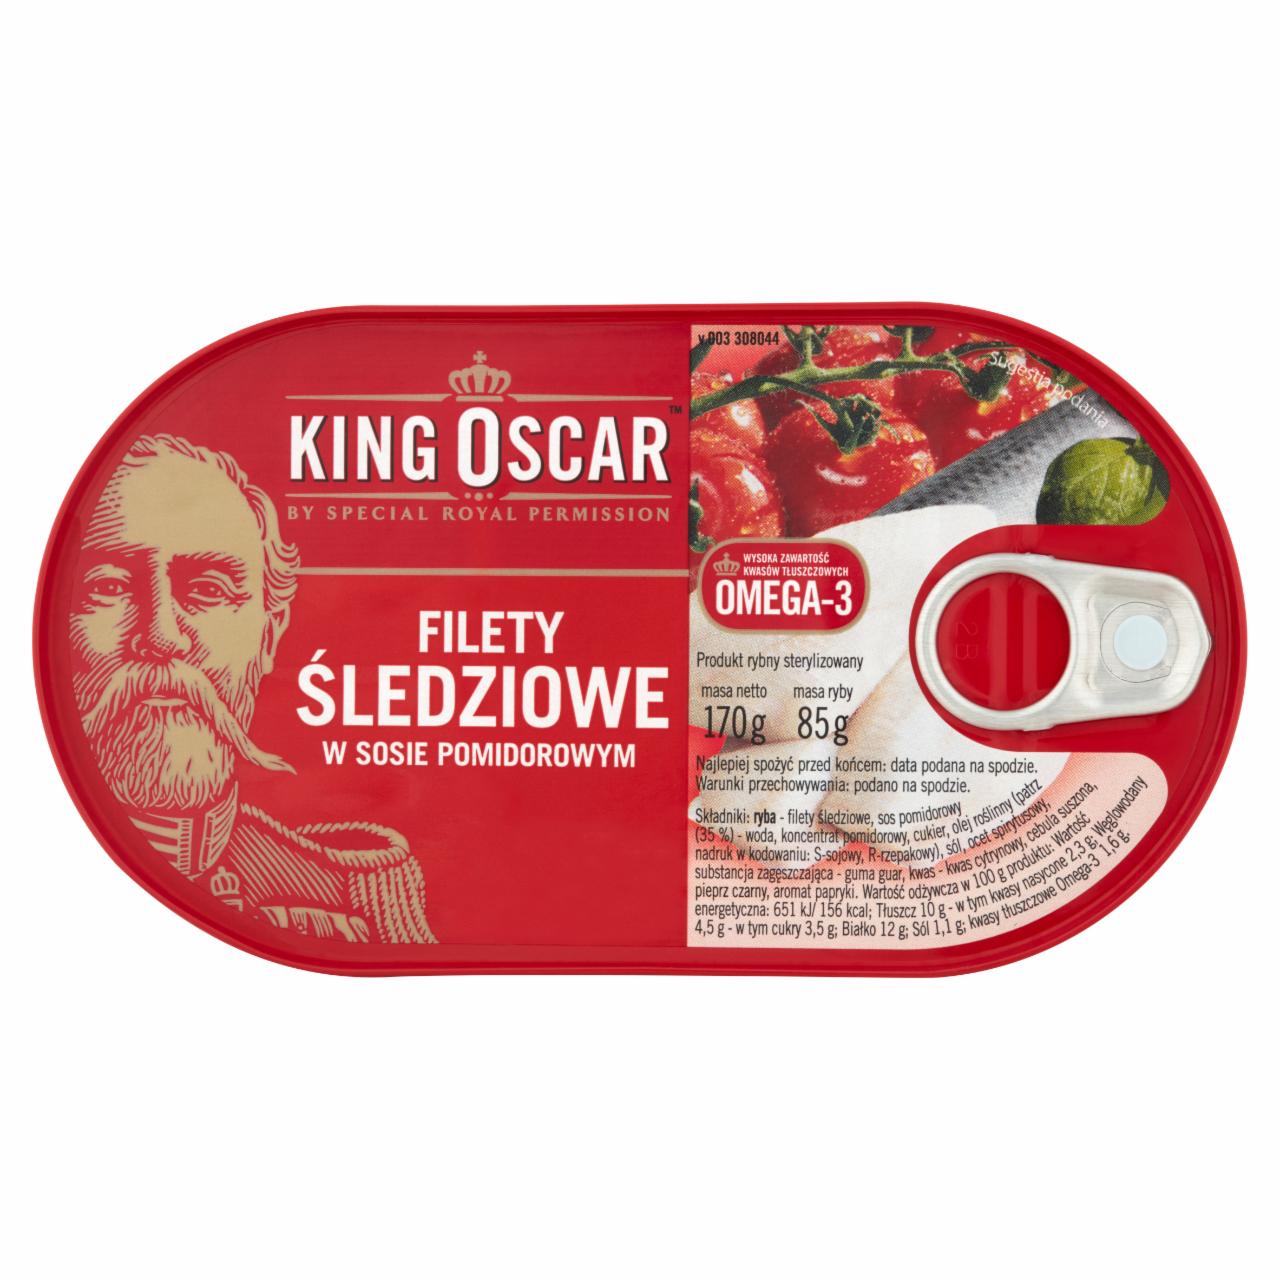 Zdjęcia - King Oscar Filety śledziowe w sosie pomidorowym 170 g